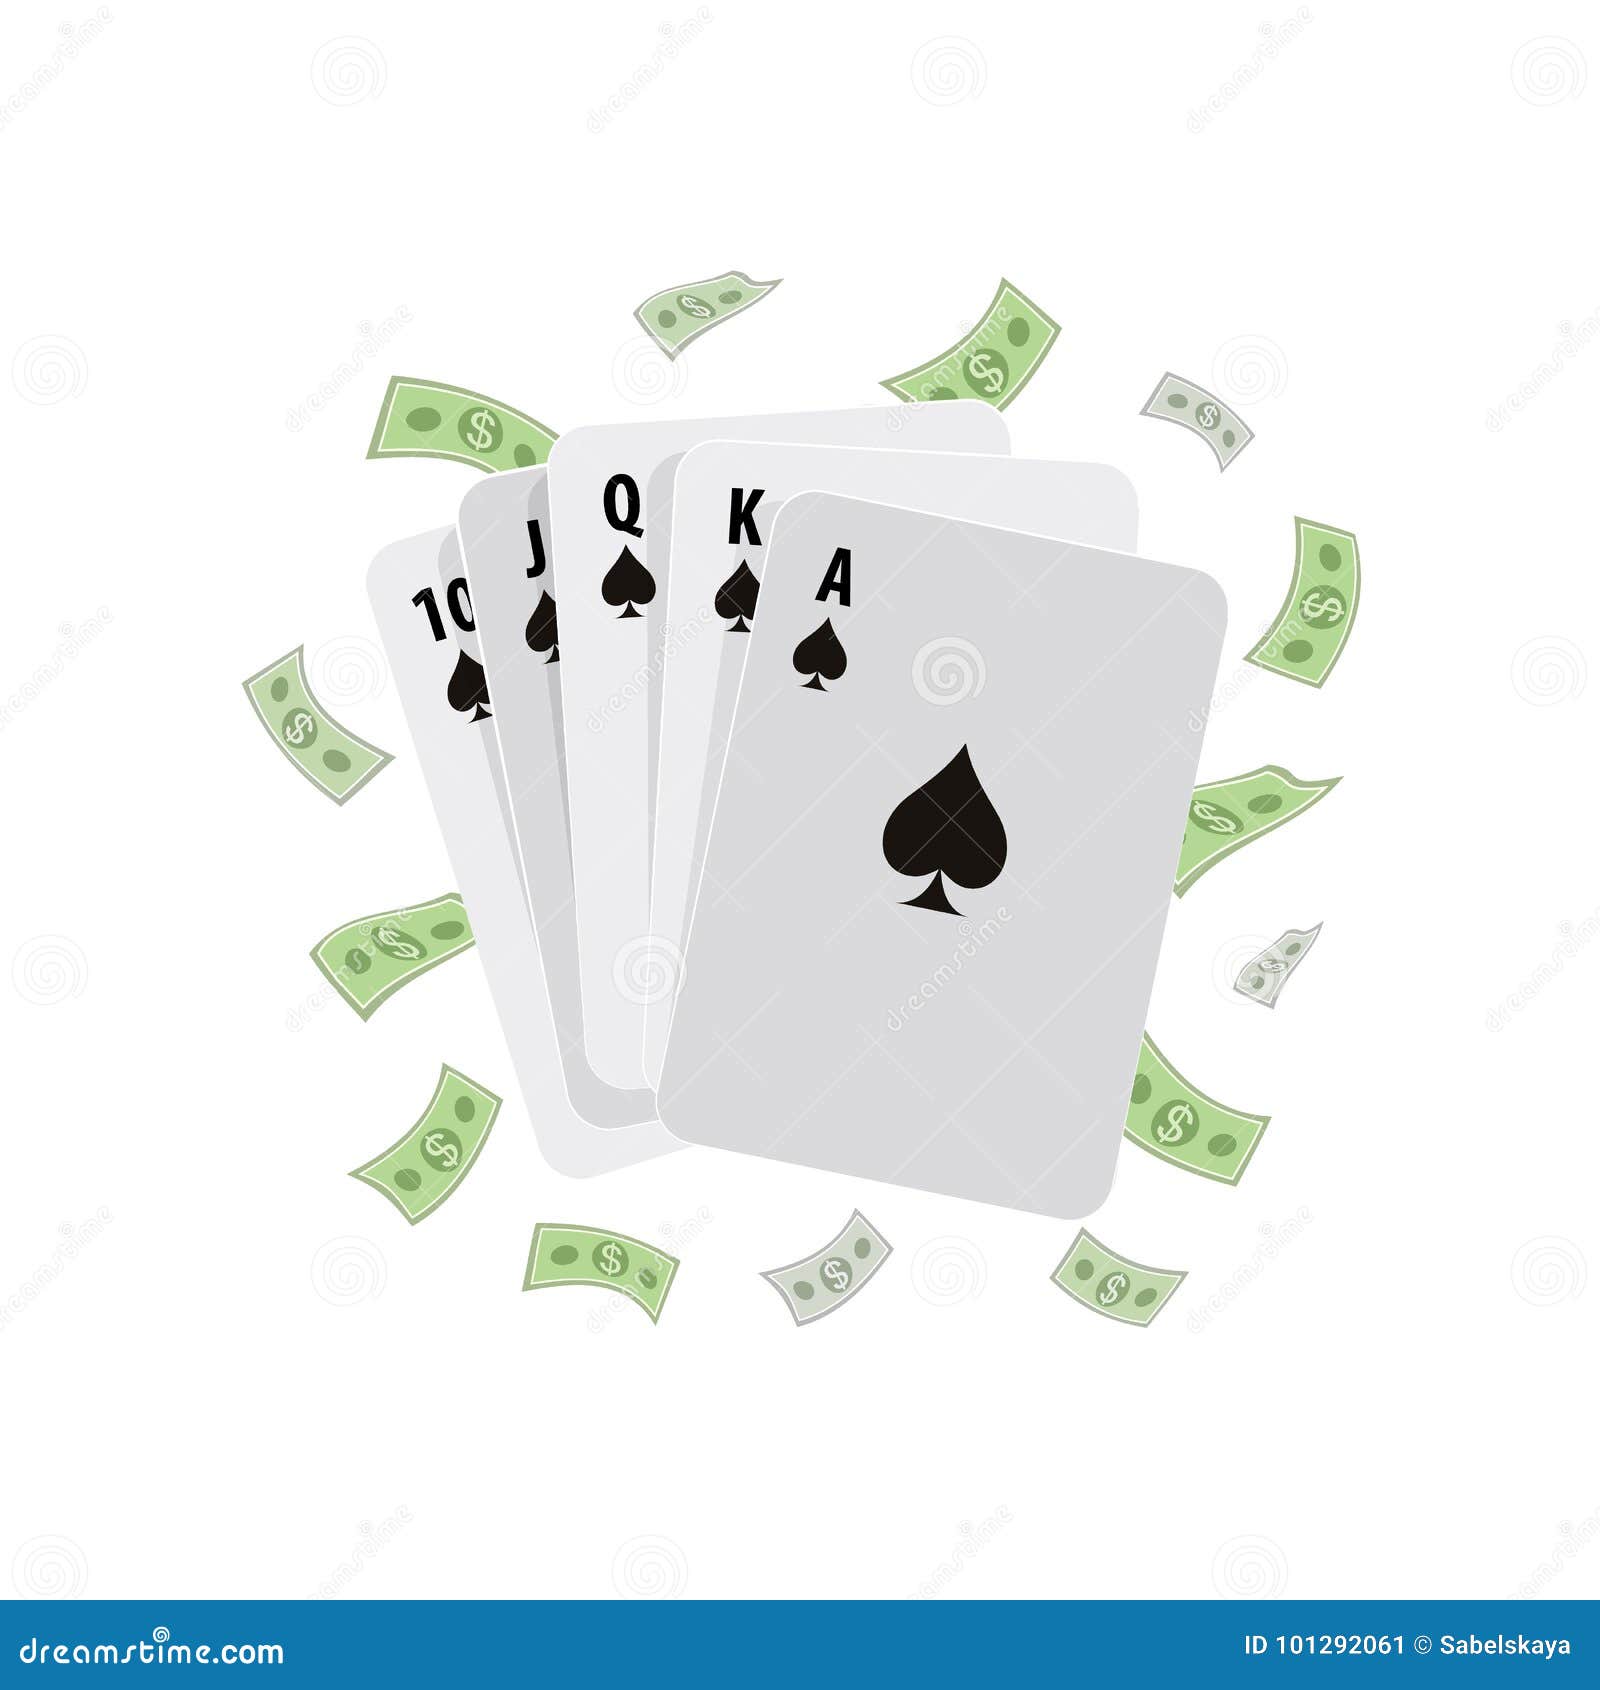 Secretos para Poker con dinero real: incluso en esta economía en crisis